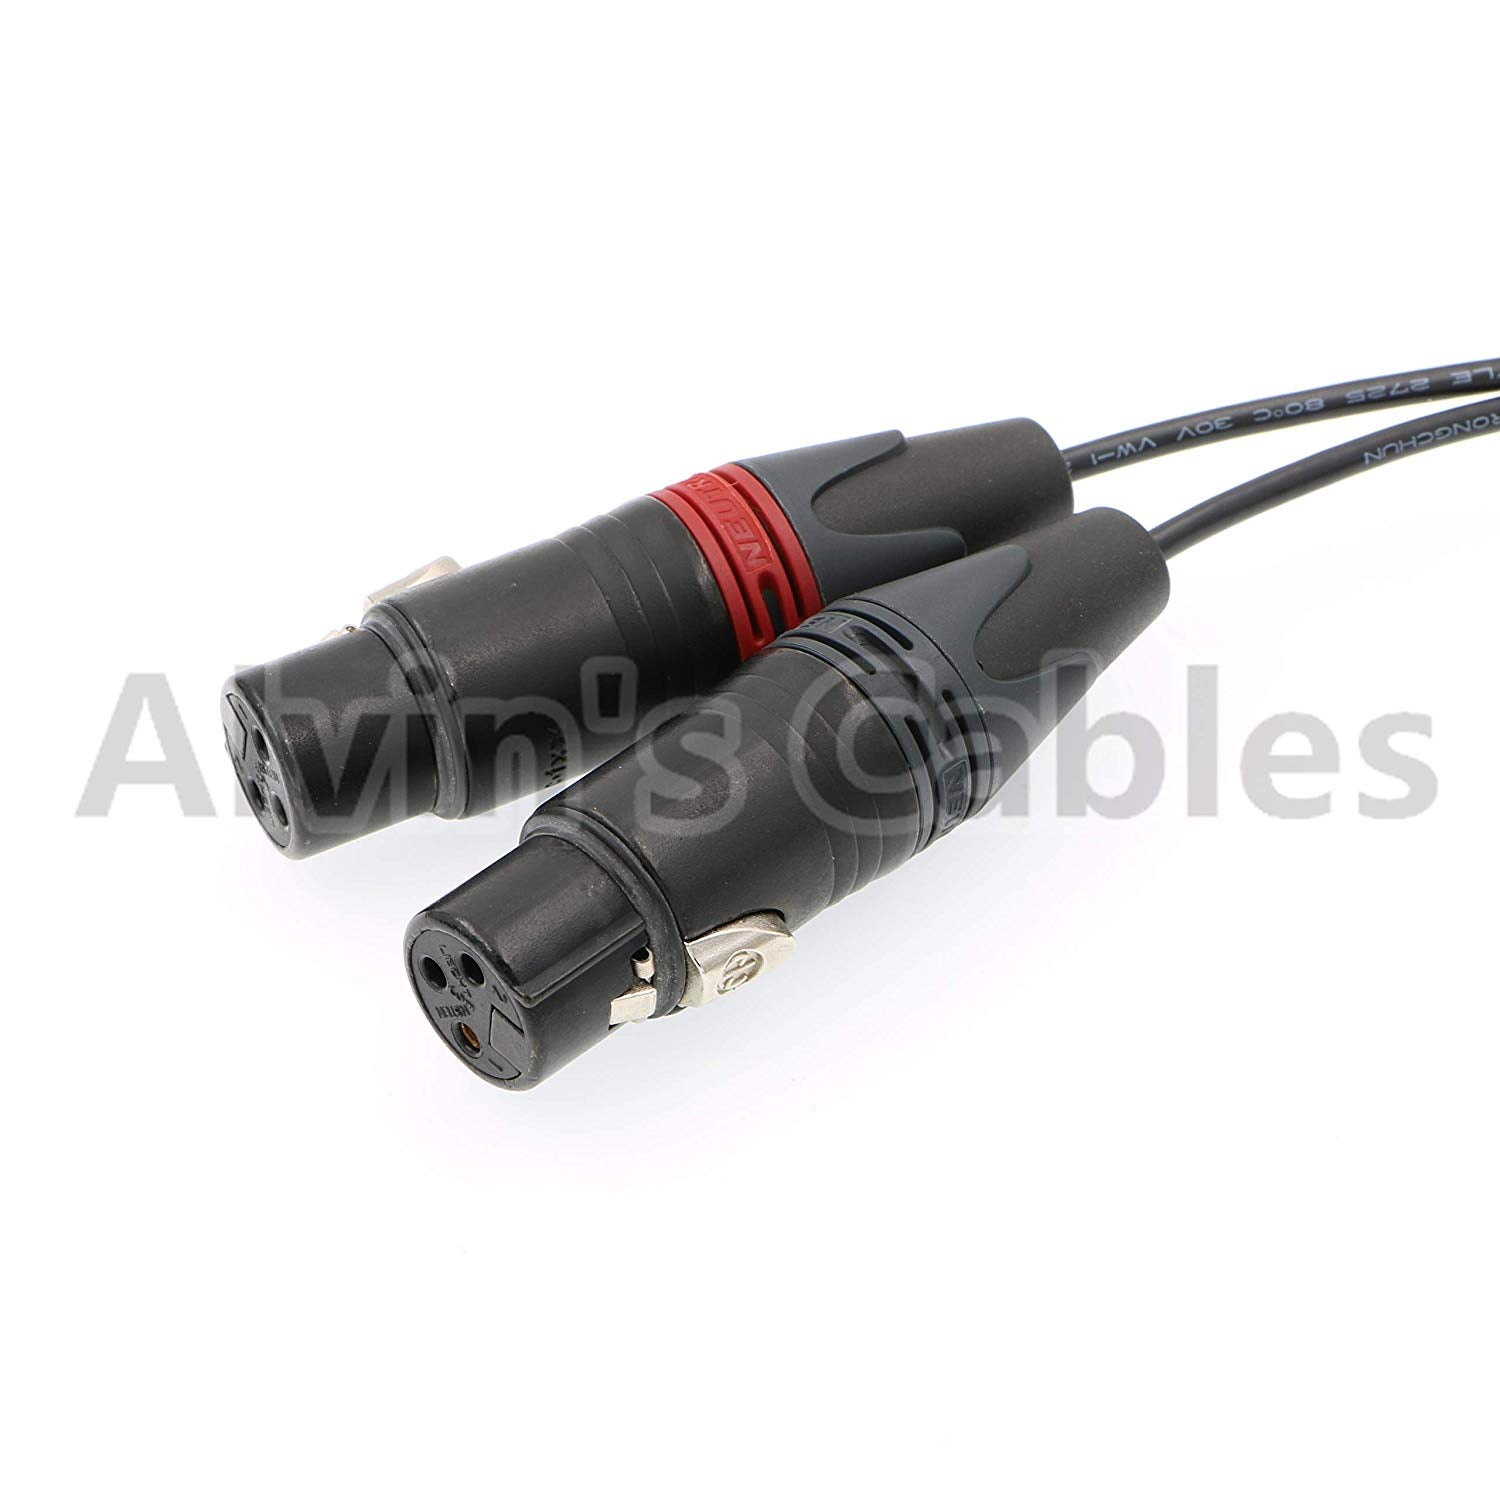 Alvin's Cables 5-poliger Stecker auf zwei XLR 3-polige Buchse Audioeingangskabel für Z CAM E2 Kamera